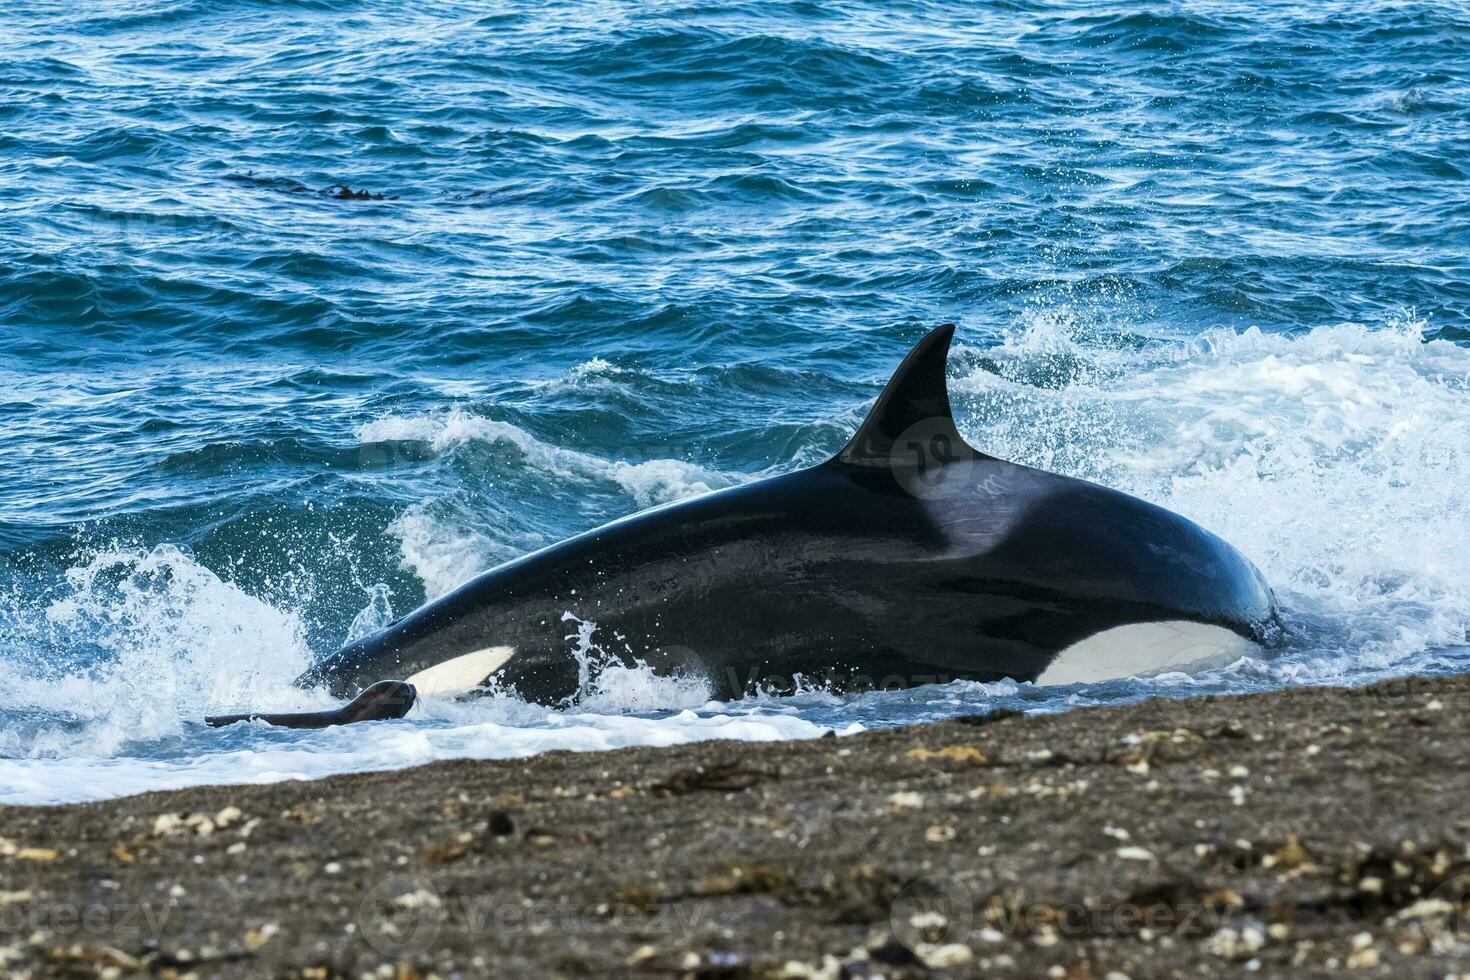 assassino baleia Caçando em a paragoniano costa, Patagônia, Argentina foto